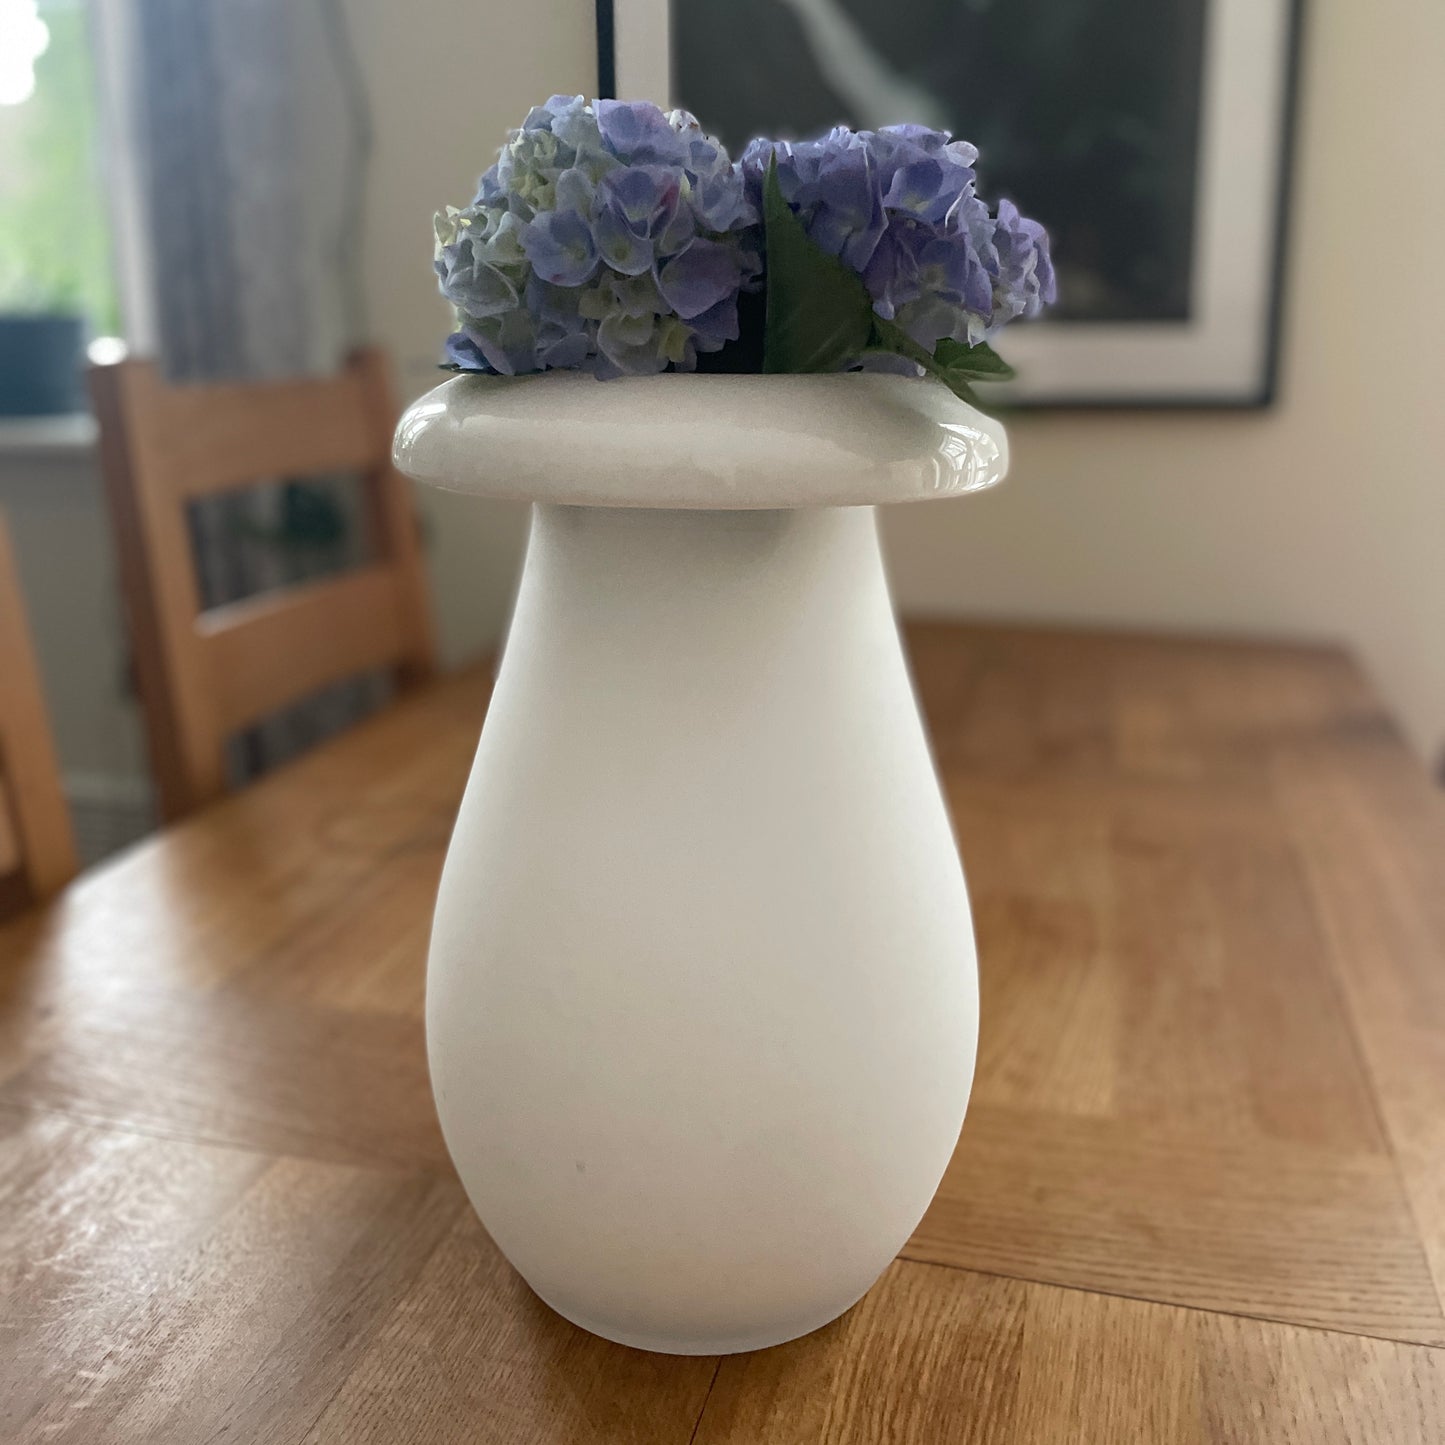 Stor vase fra IKEA